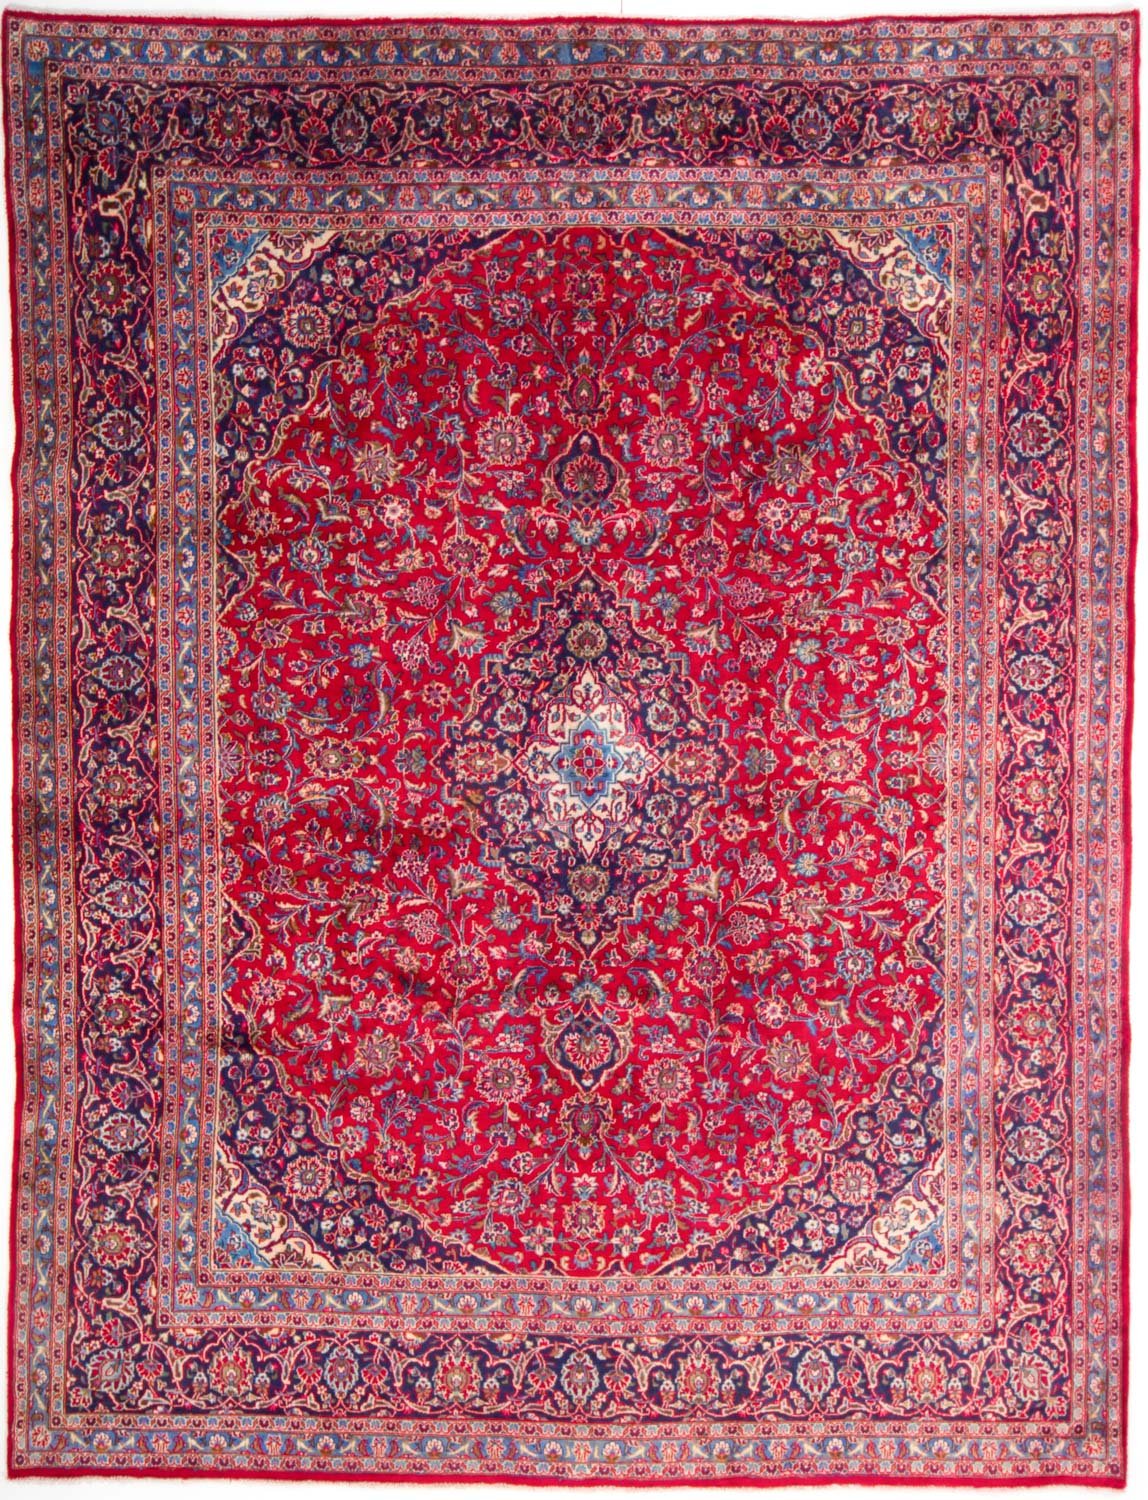 Perzische tapijten kopen? herken je een écht Perzisch tapijt (7 tips) | Glamourista - kapsels